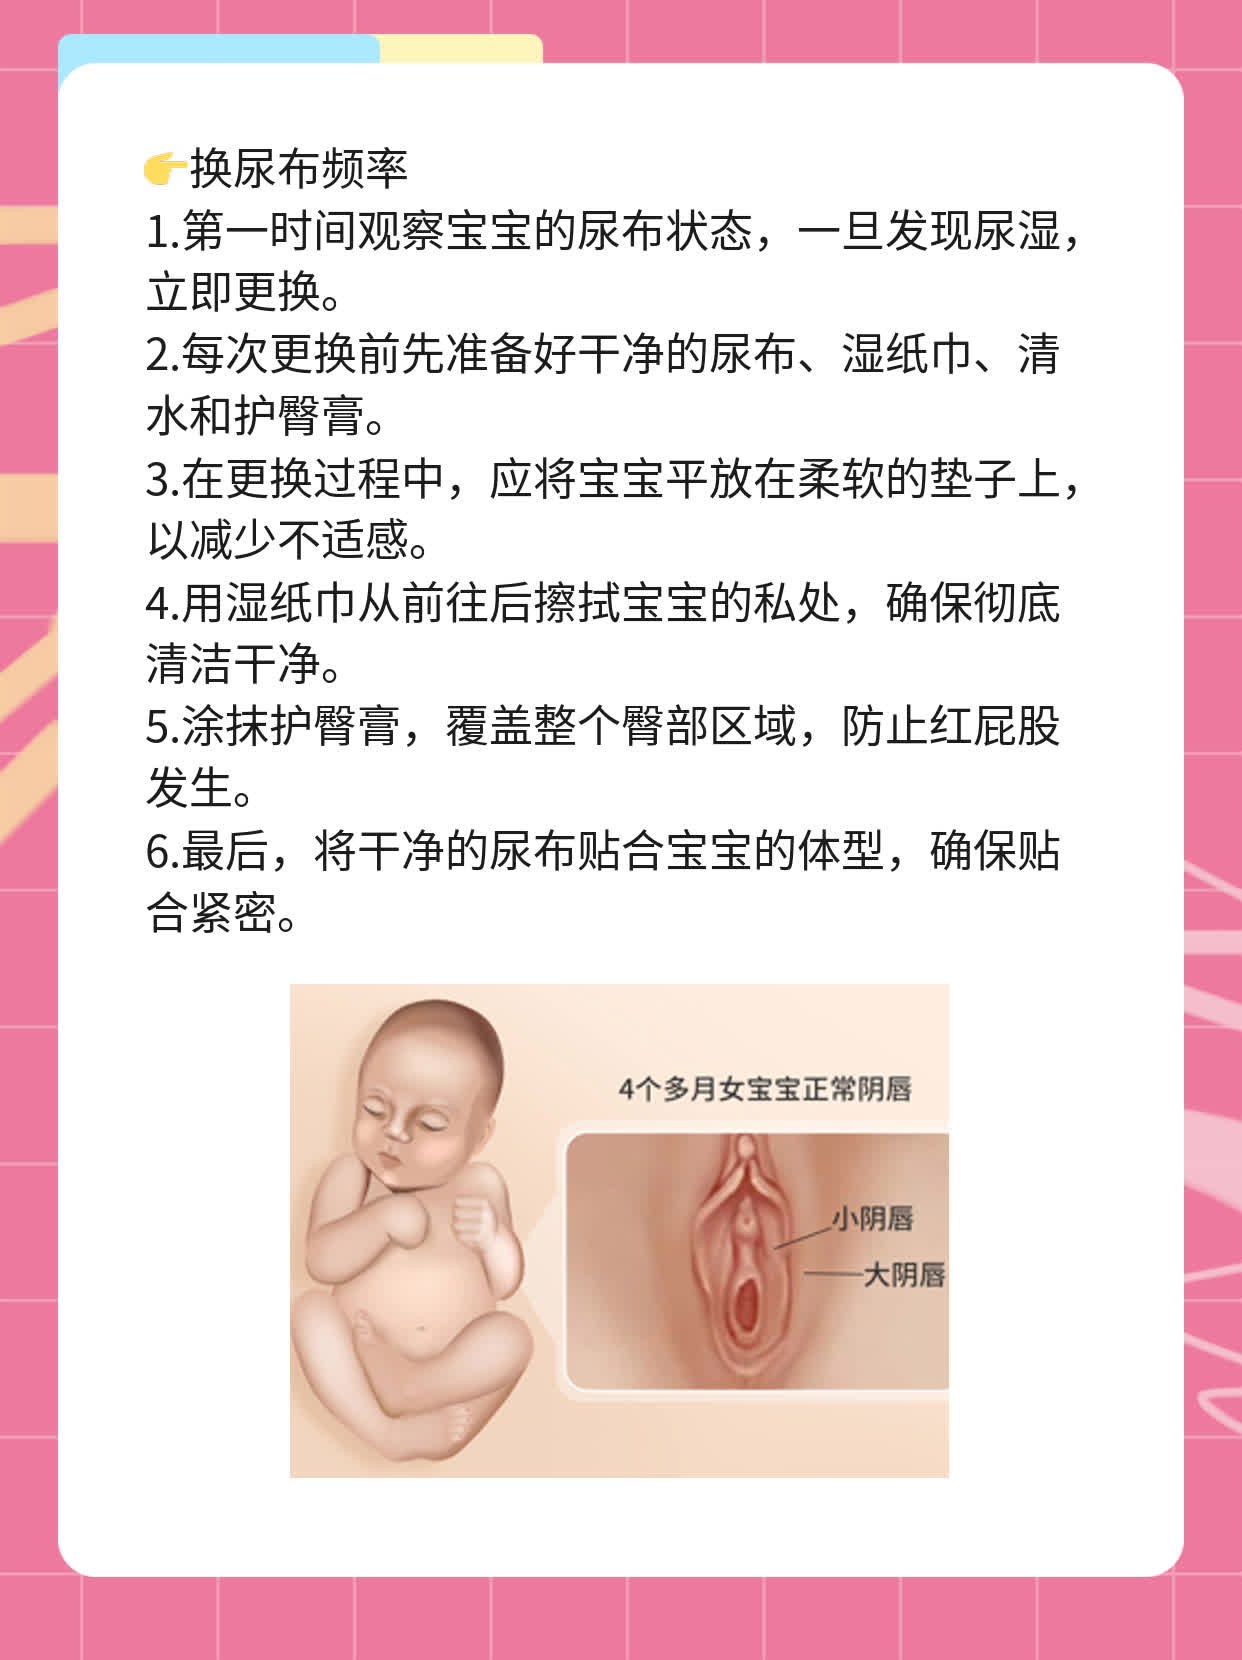 新生儿尿不湿更换频率指南